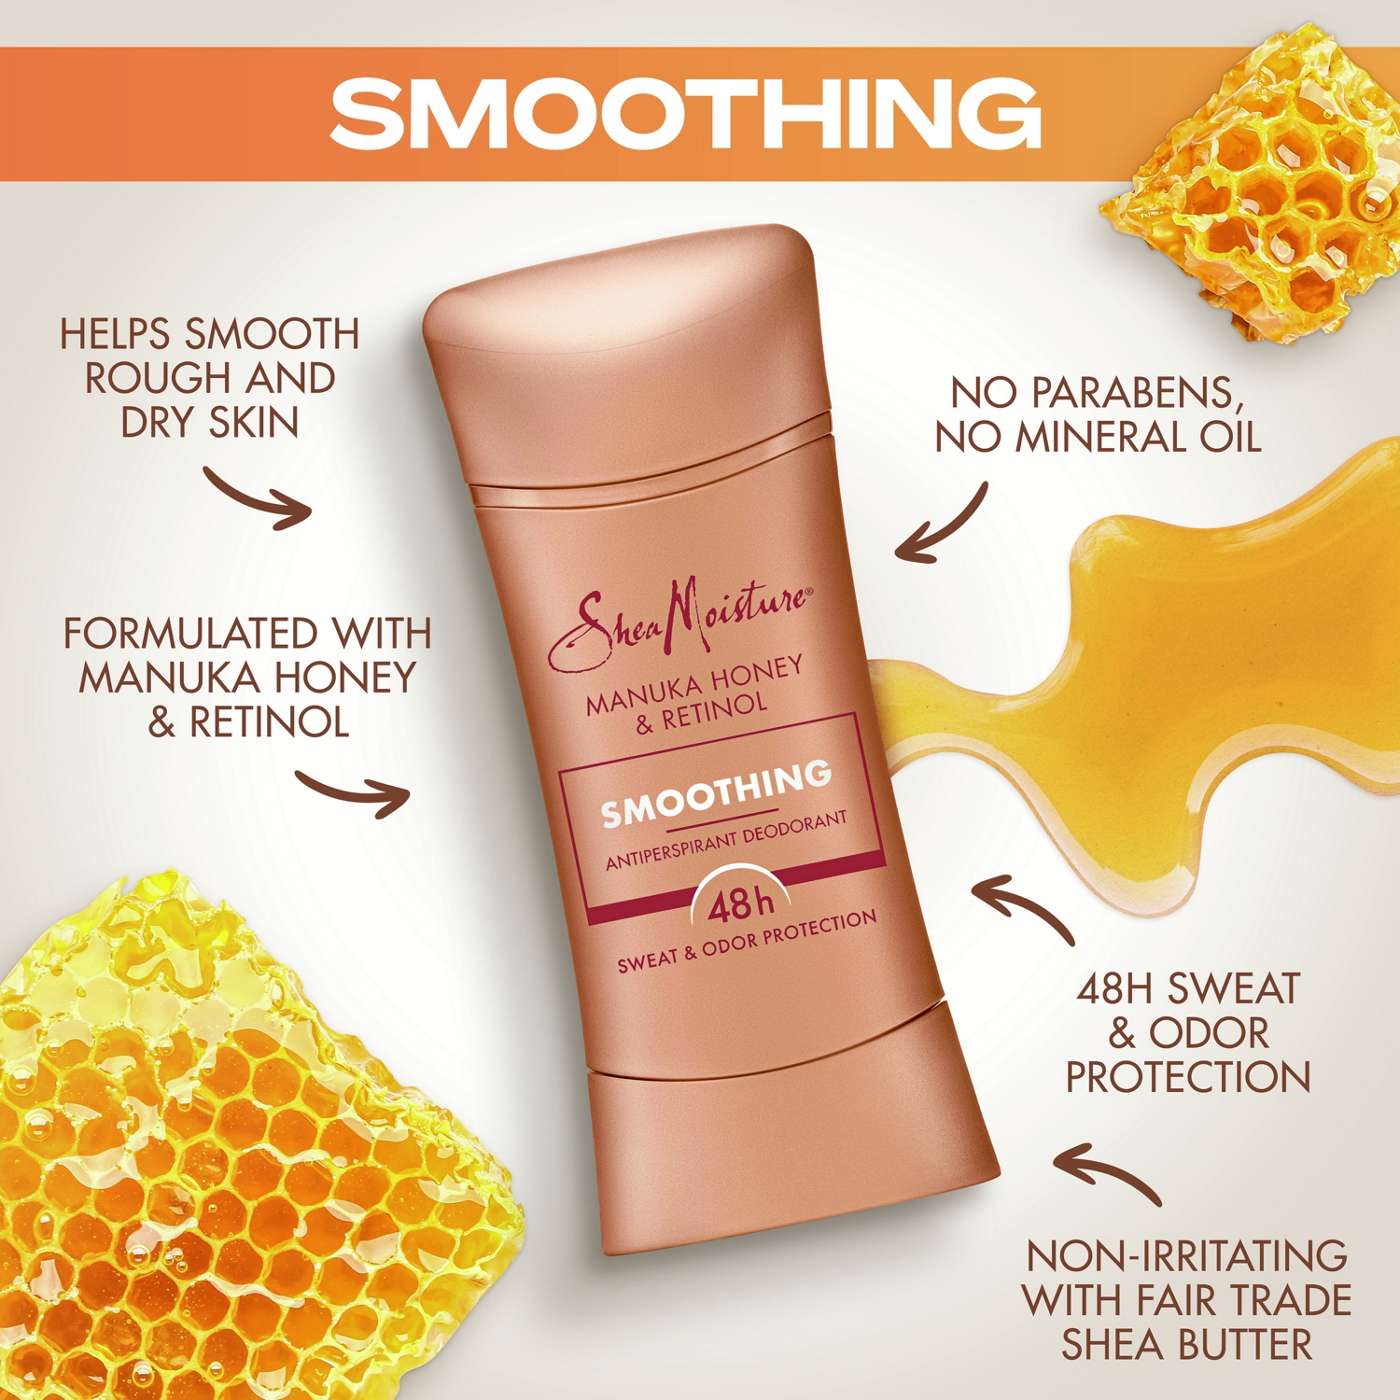 SheaMoisture Smoothing Antiperspirant Deodorant - Manuka Honey & Retinol; image 3 of 9